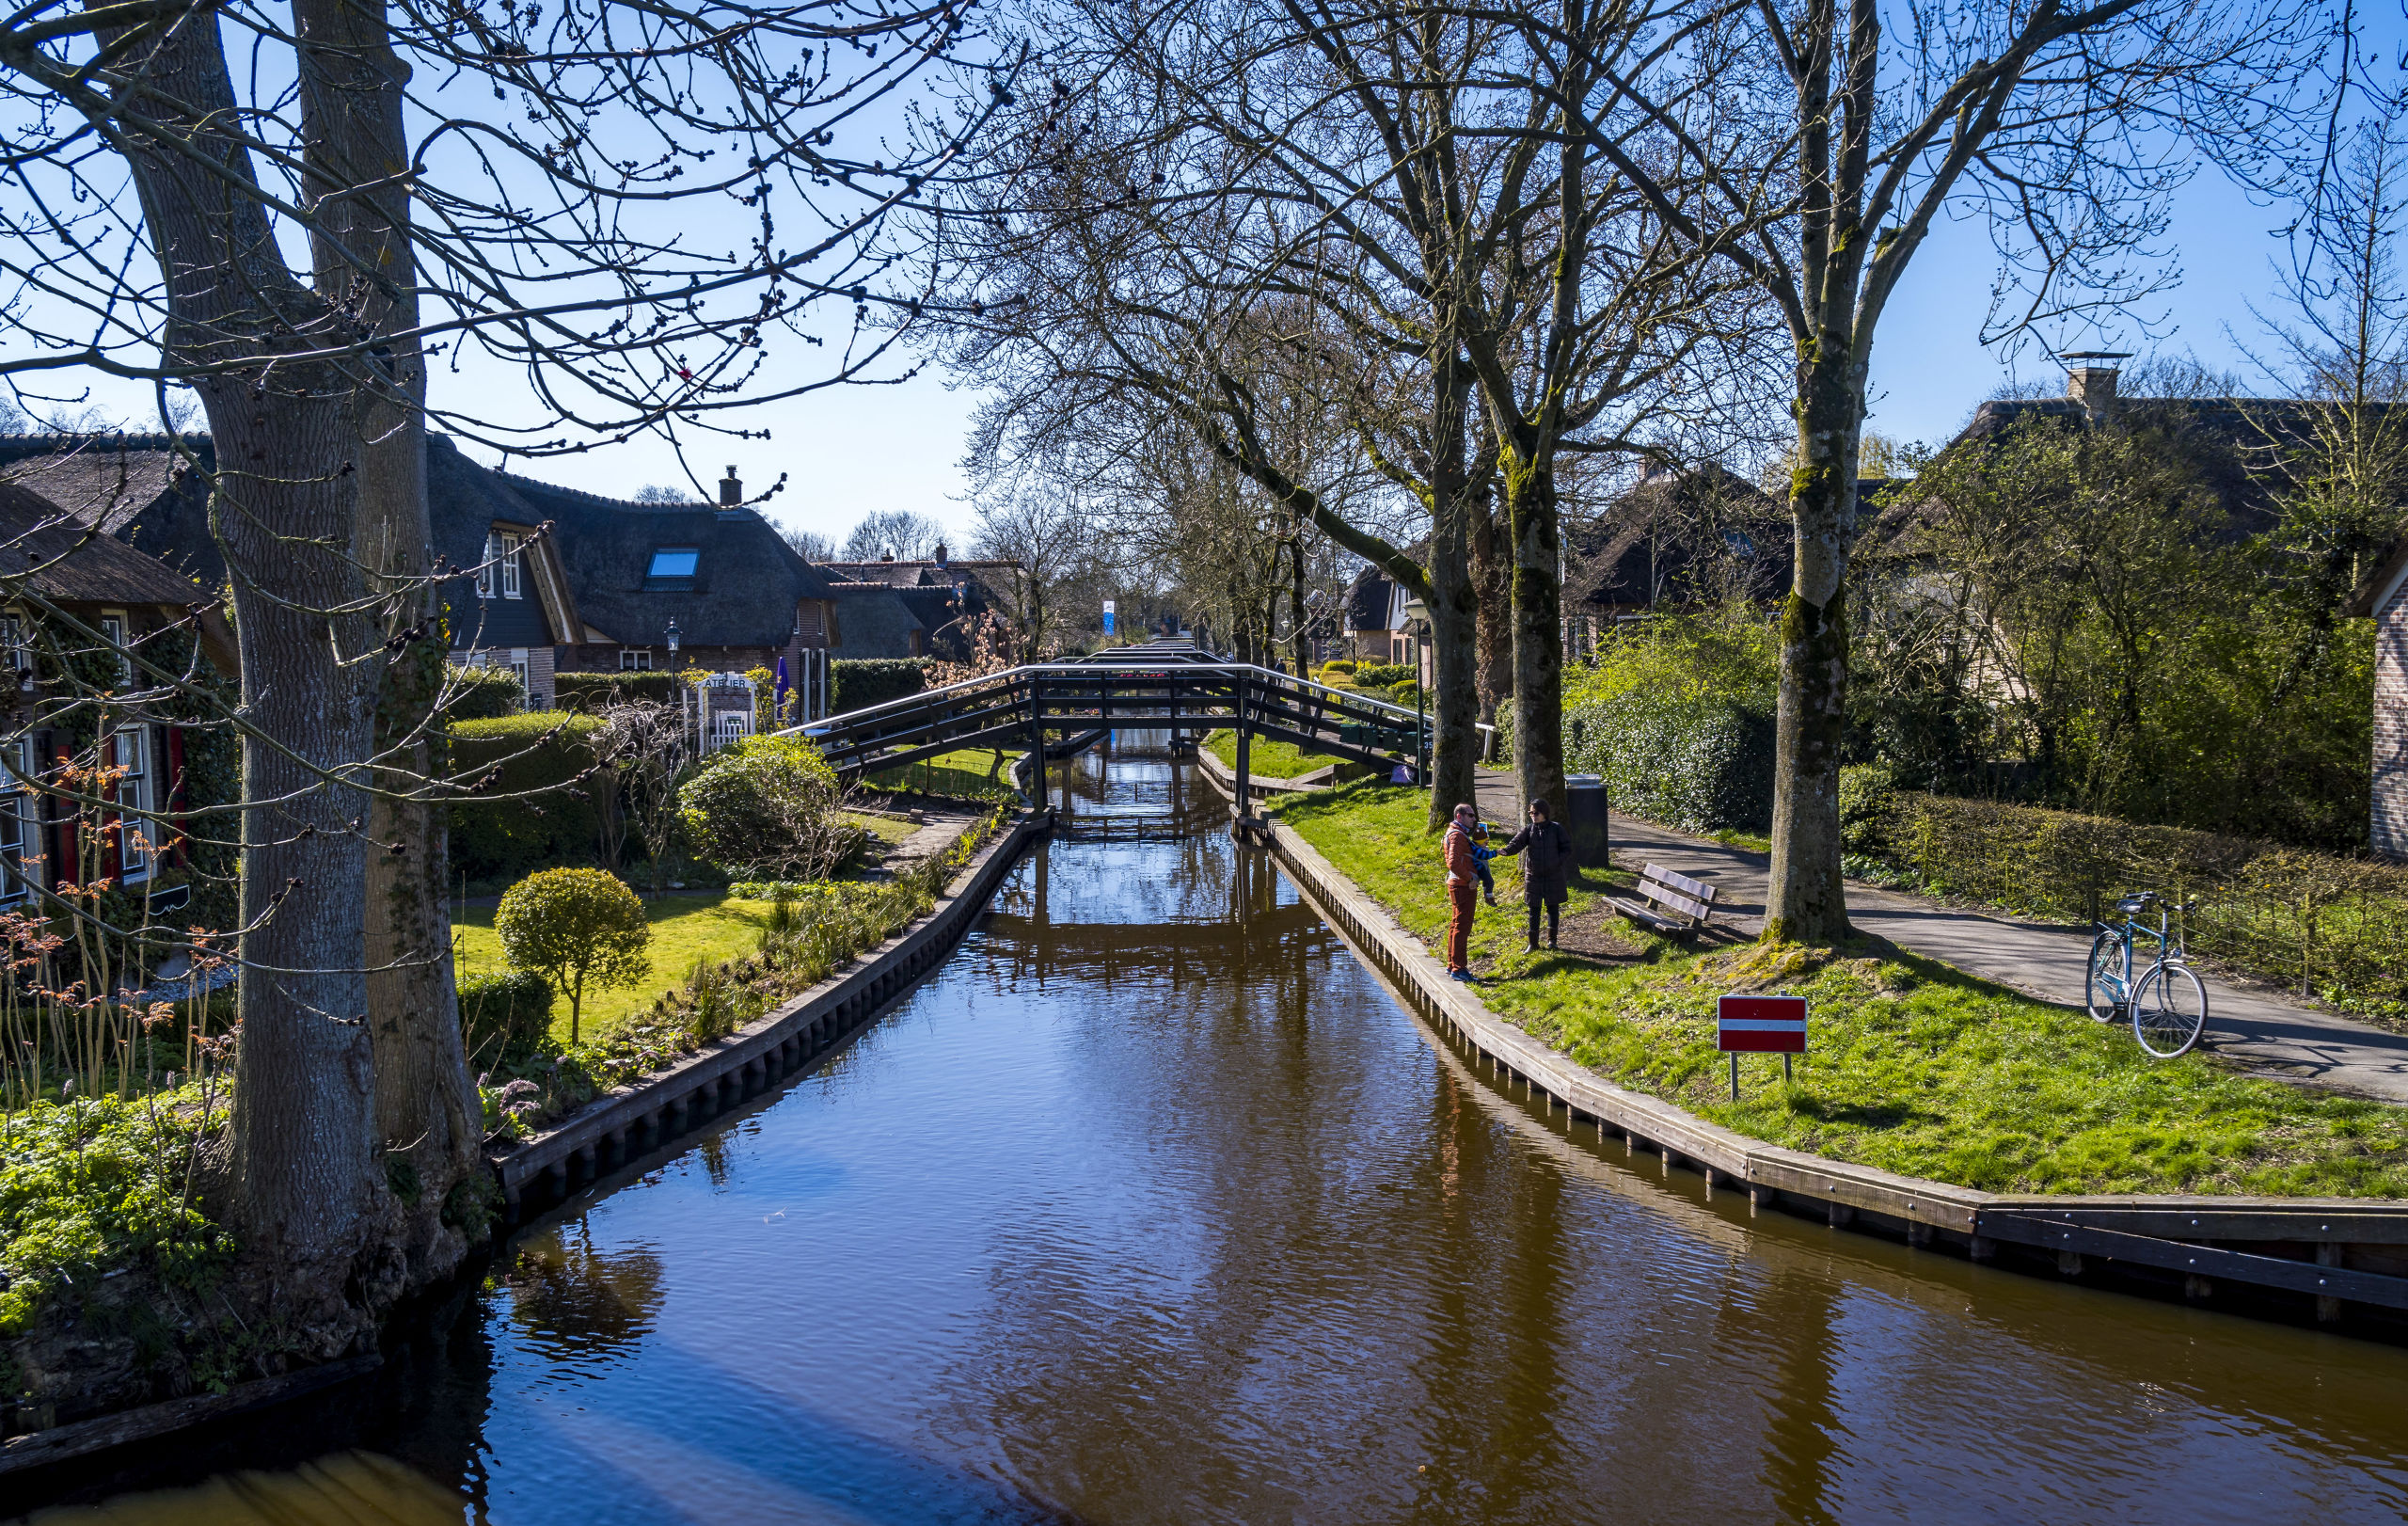 Maart 2019. Tijdens de coronacrisis is het stil en verlaten op vele toeristische plaatsen in Nederland, zoals hier in Giethoorn.ANP LEX VAN LIESHOUT